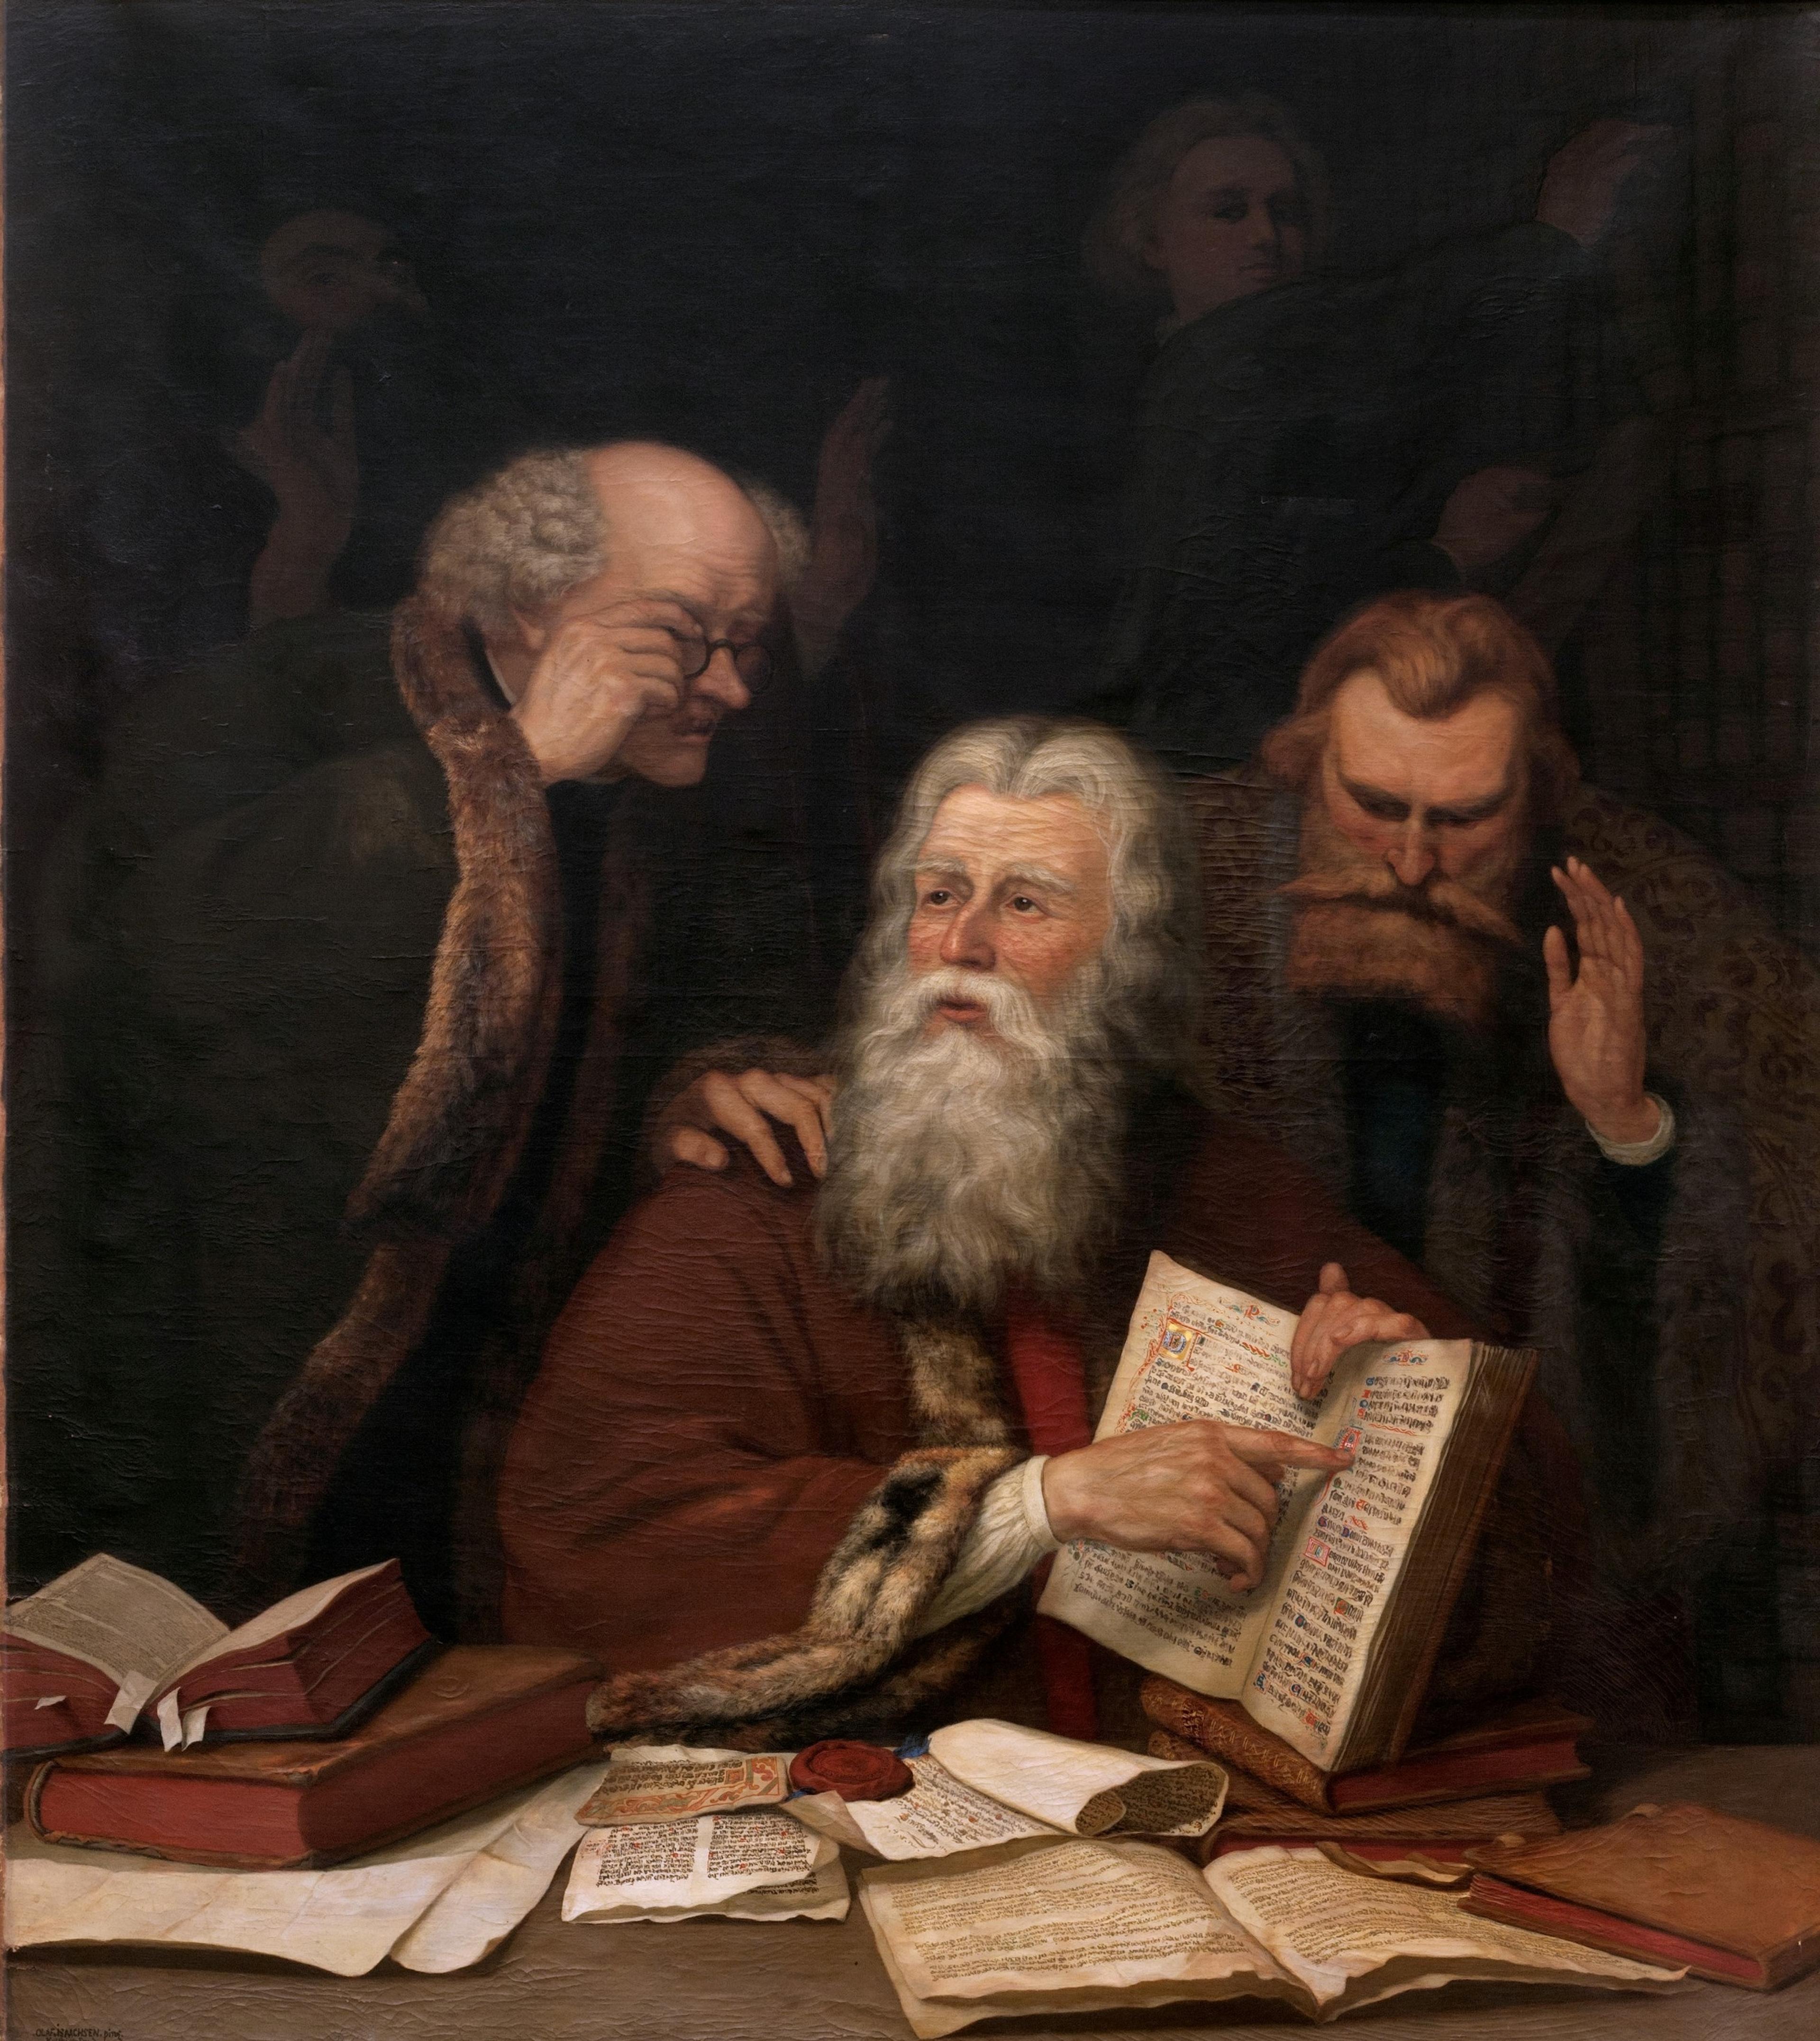 Maleri av tre menn, hvor mannen i midten leser fra en bok som han holder oppslått